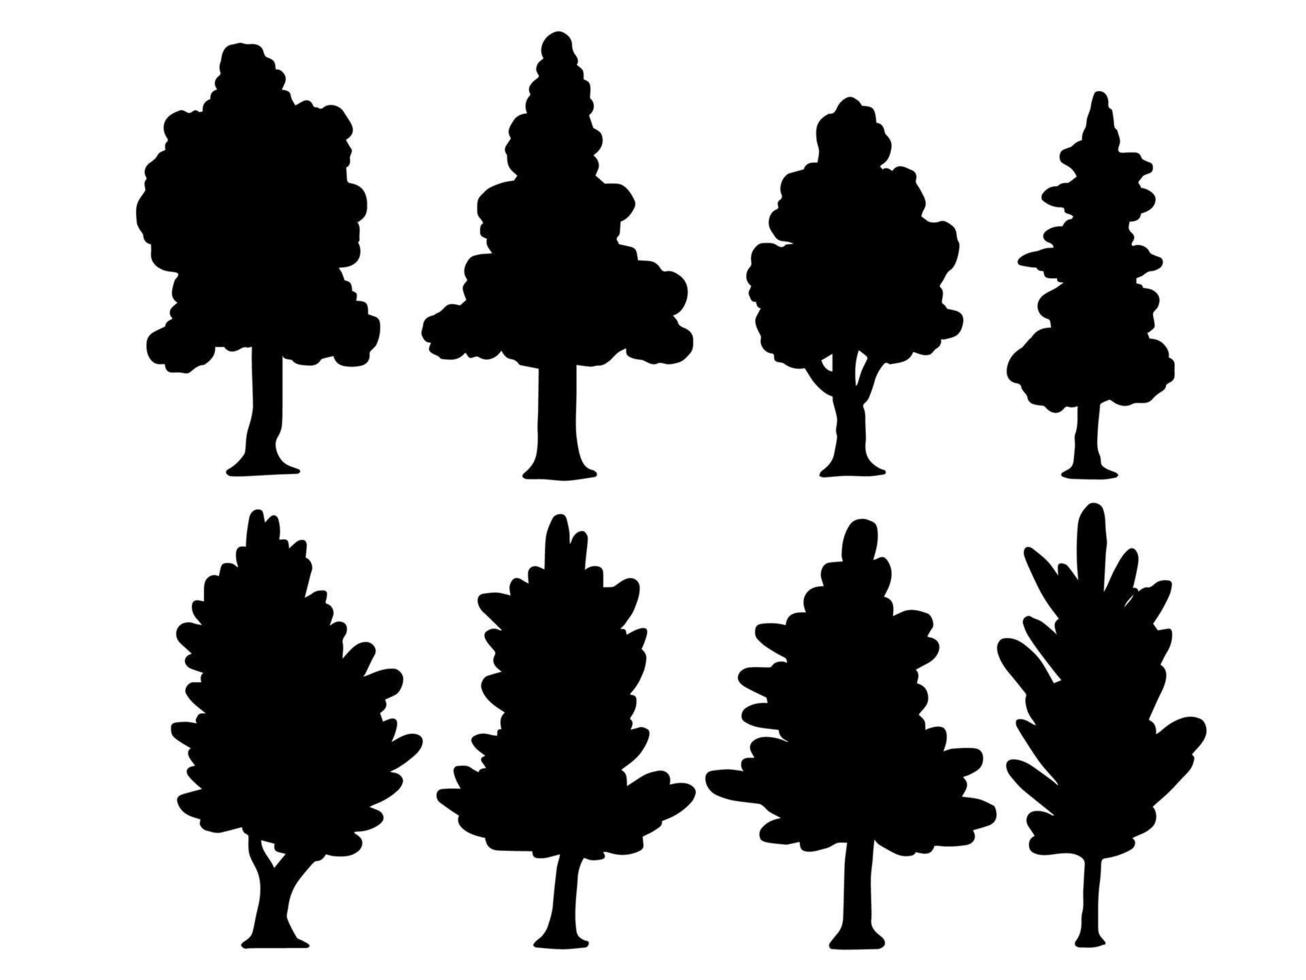 Vektor Silhouette Baum Illustration einstellen